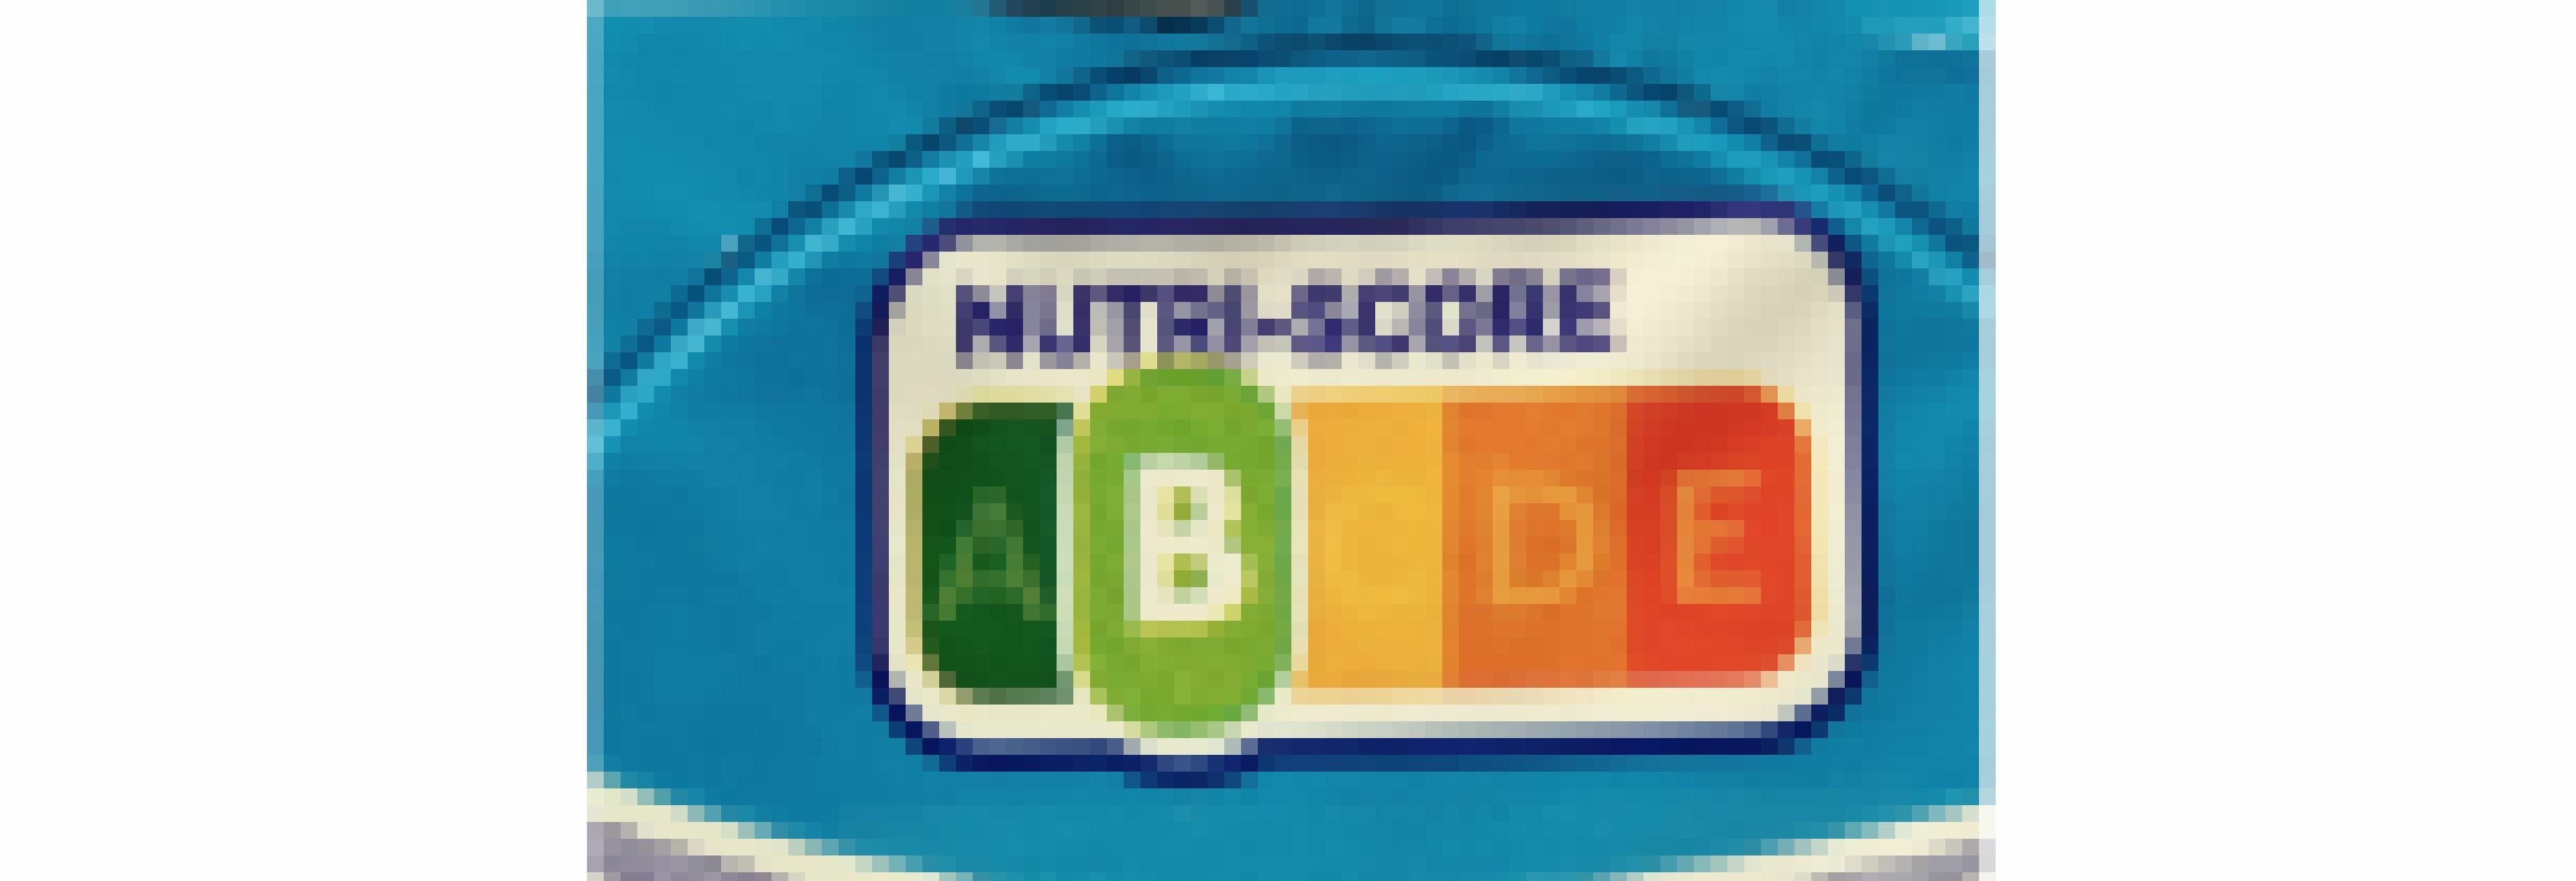 Das Nutri-Score-Logo besteht aus einer farbigen Skala von grün bis rot und den Buchstaben A bis E. Fett hervorgehoben ist die Bewertung für das vorliegende Lebensmittel: A ist dabei die beste Bewertung, E die schlechteste.